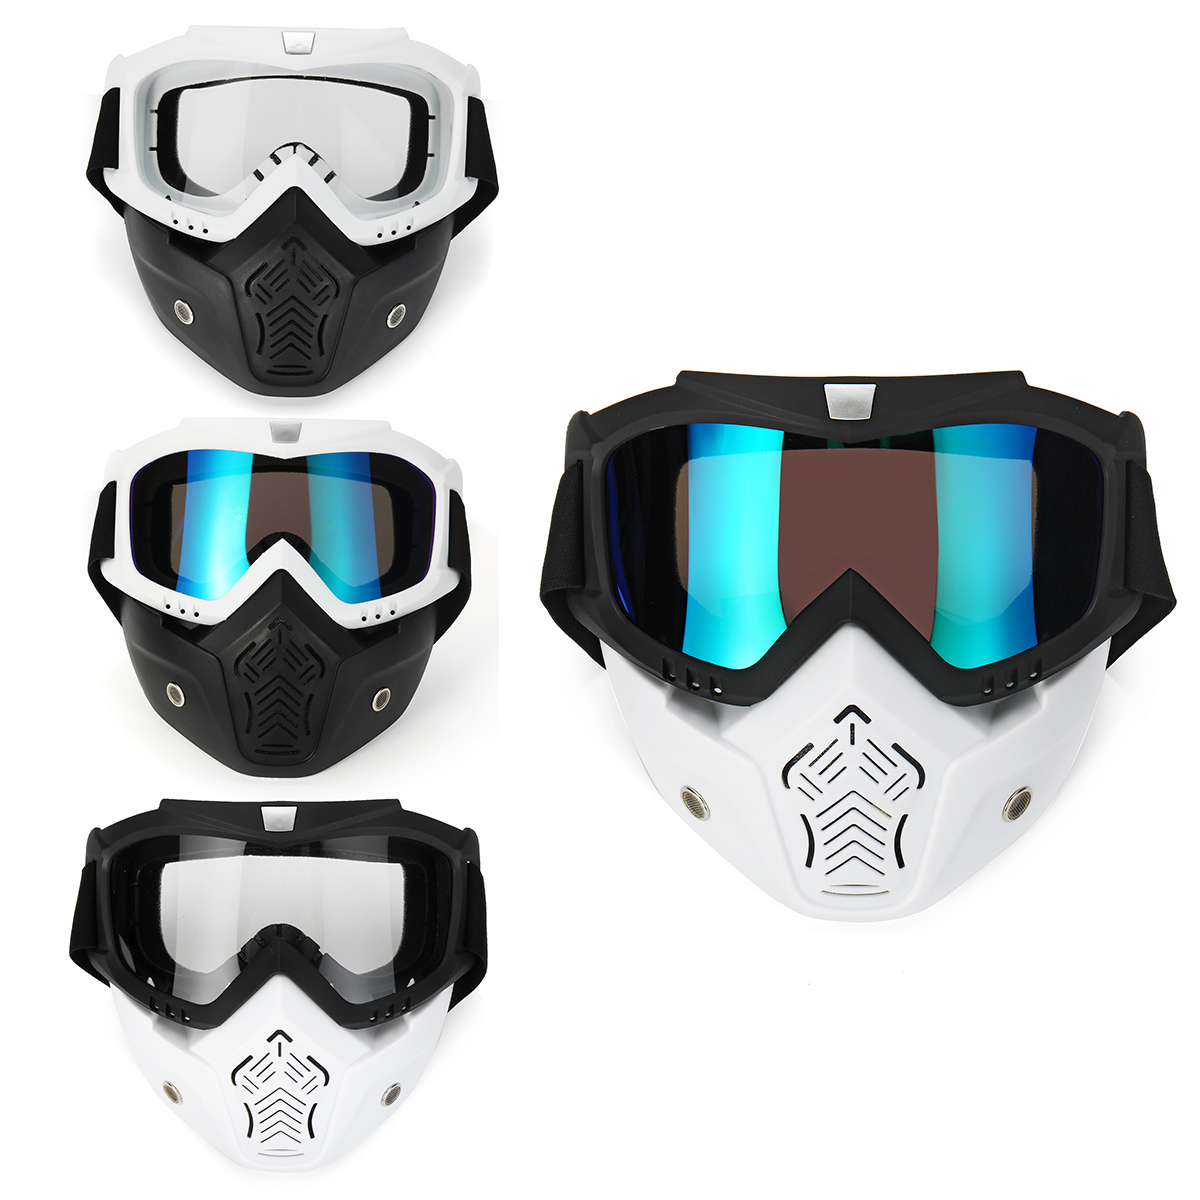 

Motorcycle Goggles Detachable Modular Shield Face ATV MX Racing Motocross Mask